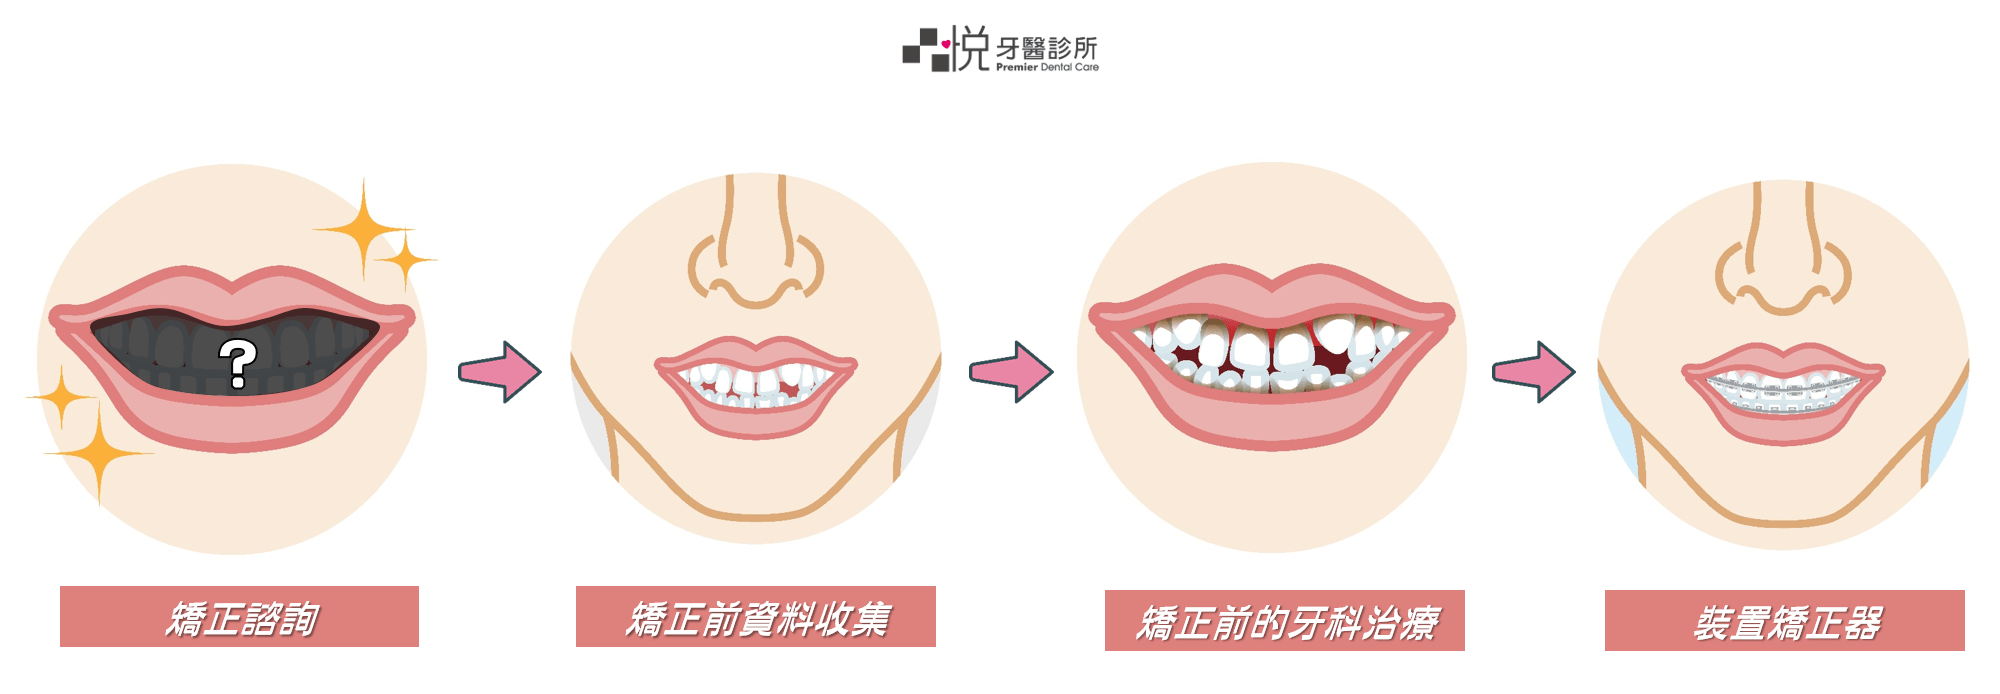 牙齒矯正流程